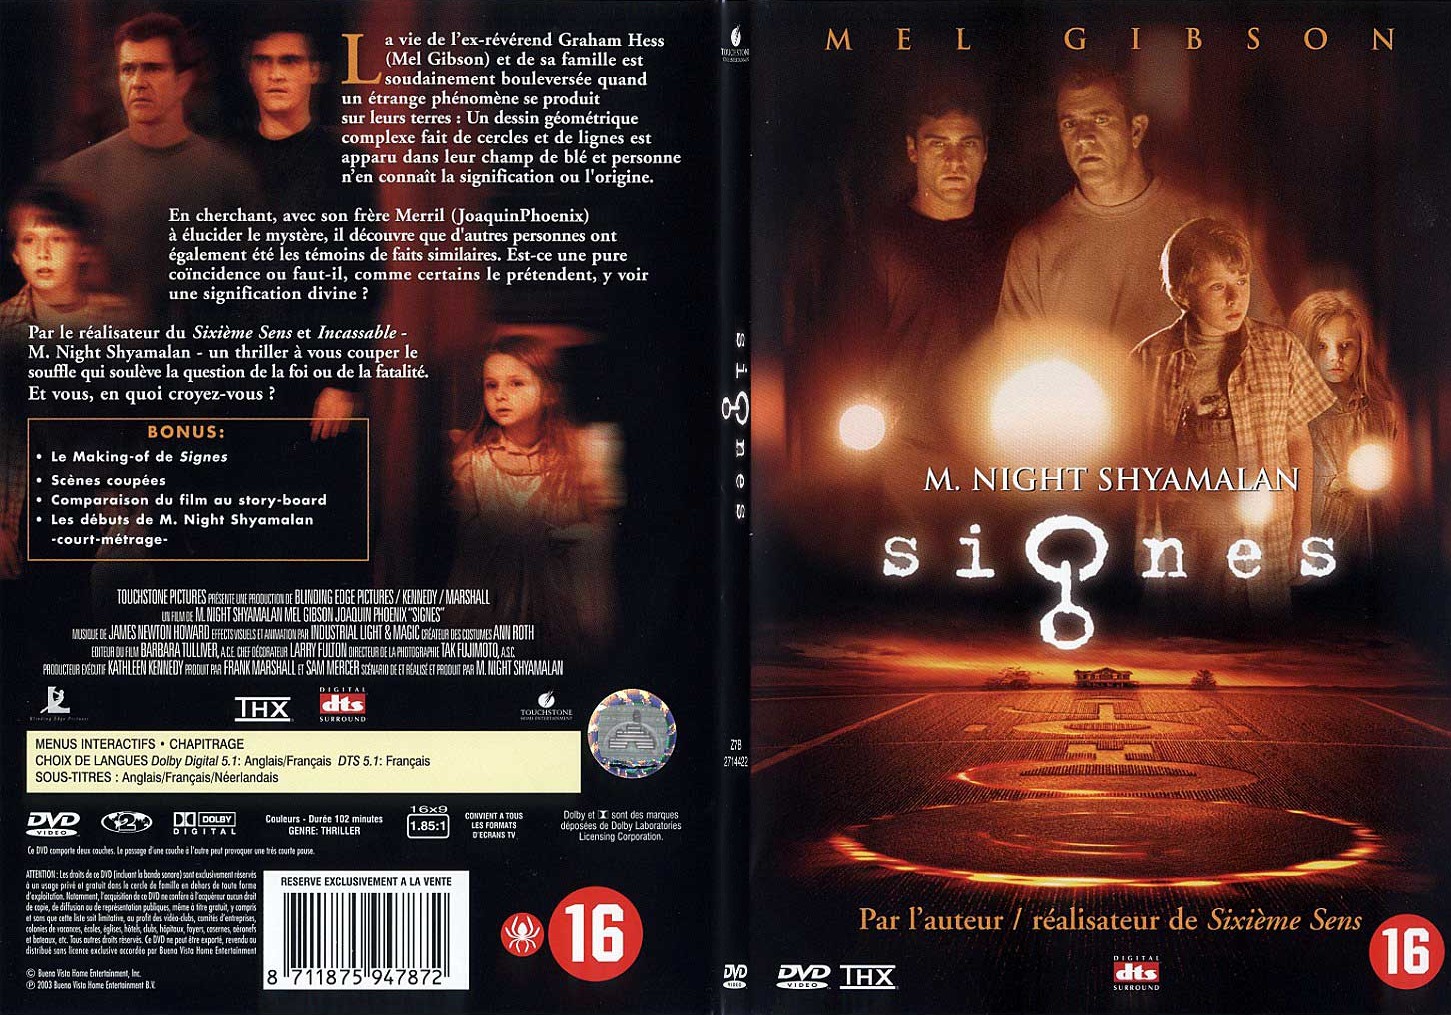 Jaquette DVD Signes - SLIM